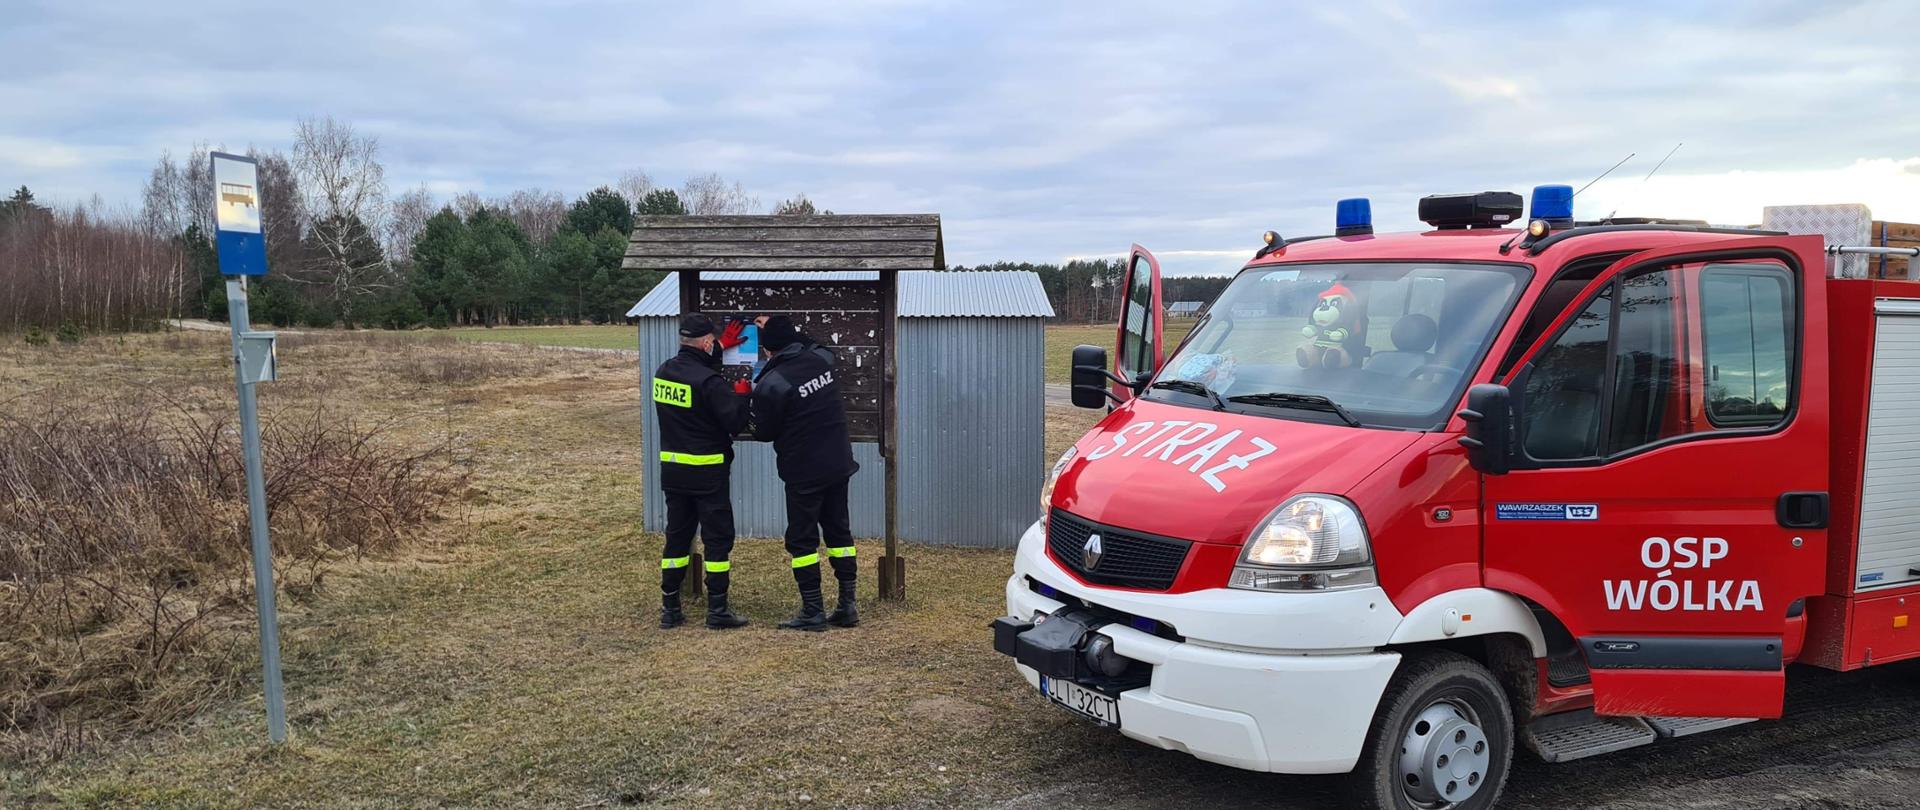 dystrybucja ulotek przez jednostki Ochotniczych Straży Pożarnych na terenie powiatu lipnowskiego